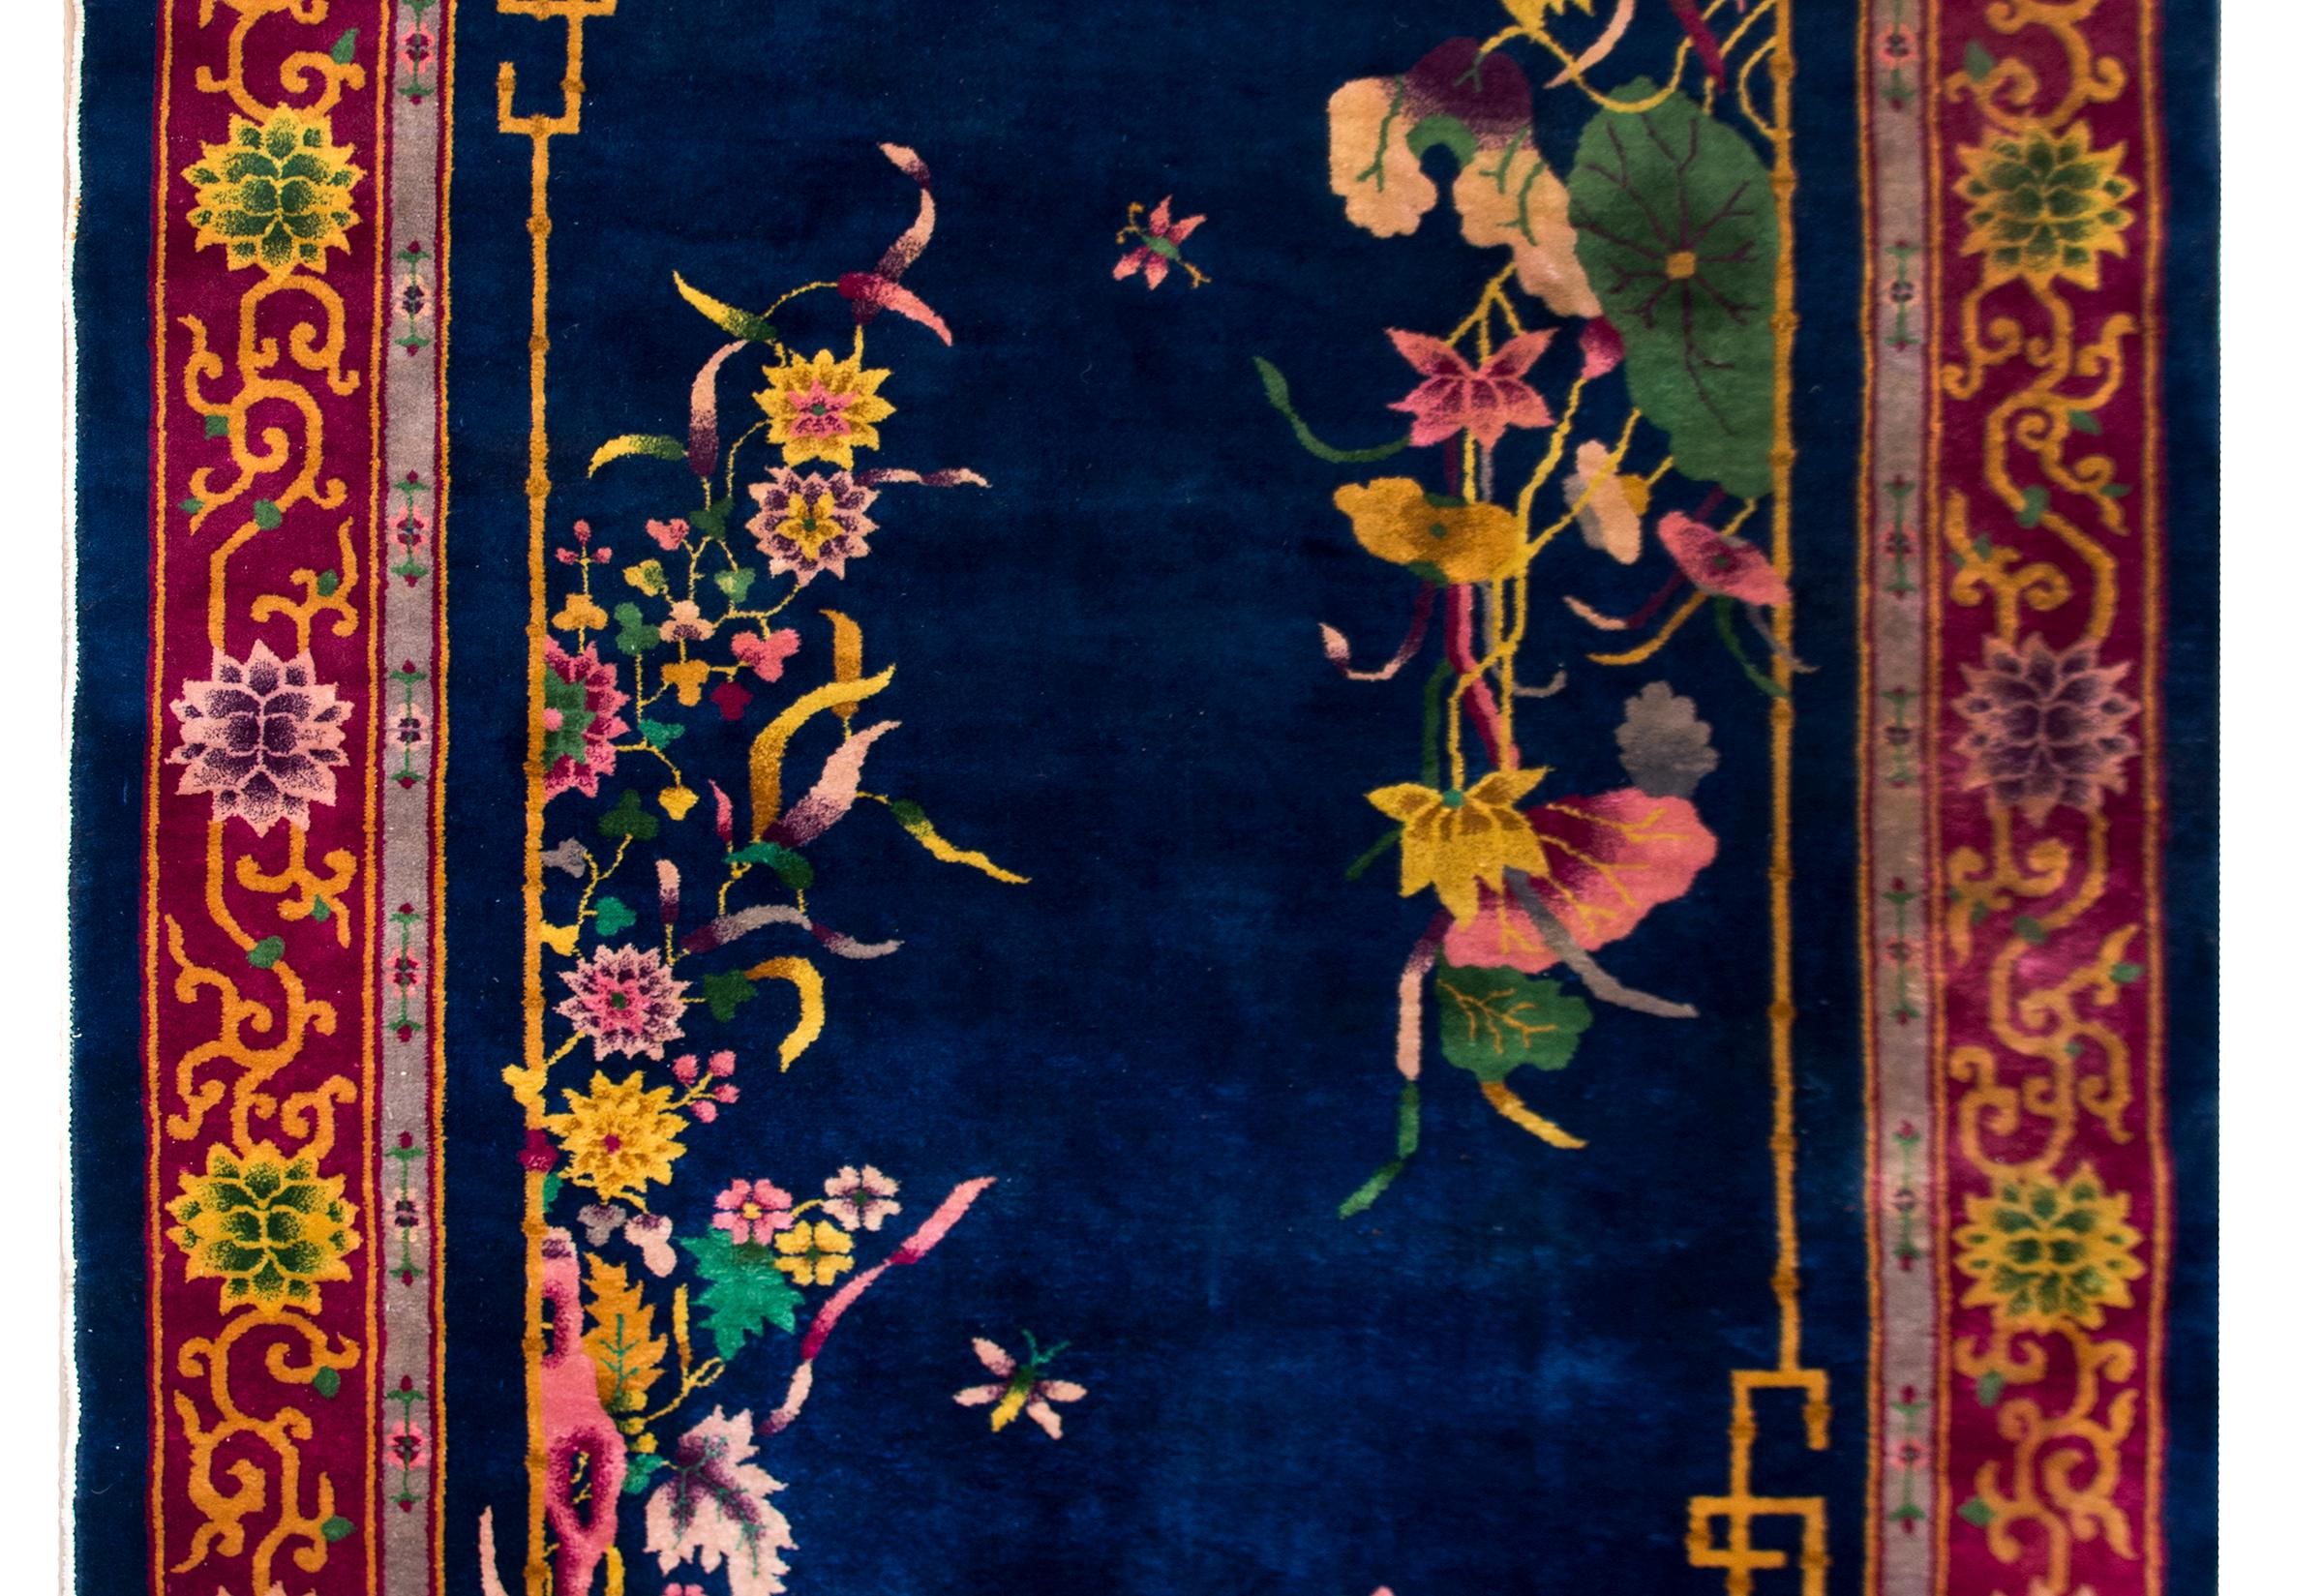 Ein schöner chinesischer Art-Déco-Teppich aus dem frühen 20. Jahrhundert mit tiefem indigoblauem Hintergrund, der mit mehrfarbigen Chrysanthemen, Pfingstrosen, Prunus- und Lotusblüten bedeckt und von einer breiten Bordüre mit großen Chrysanthemen